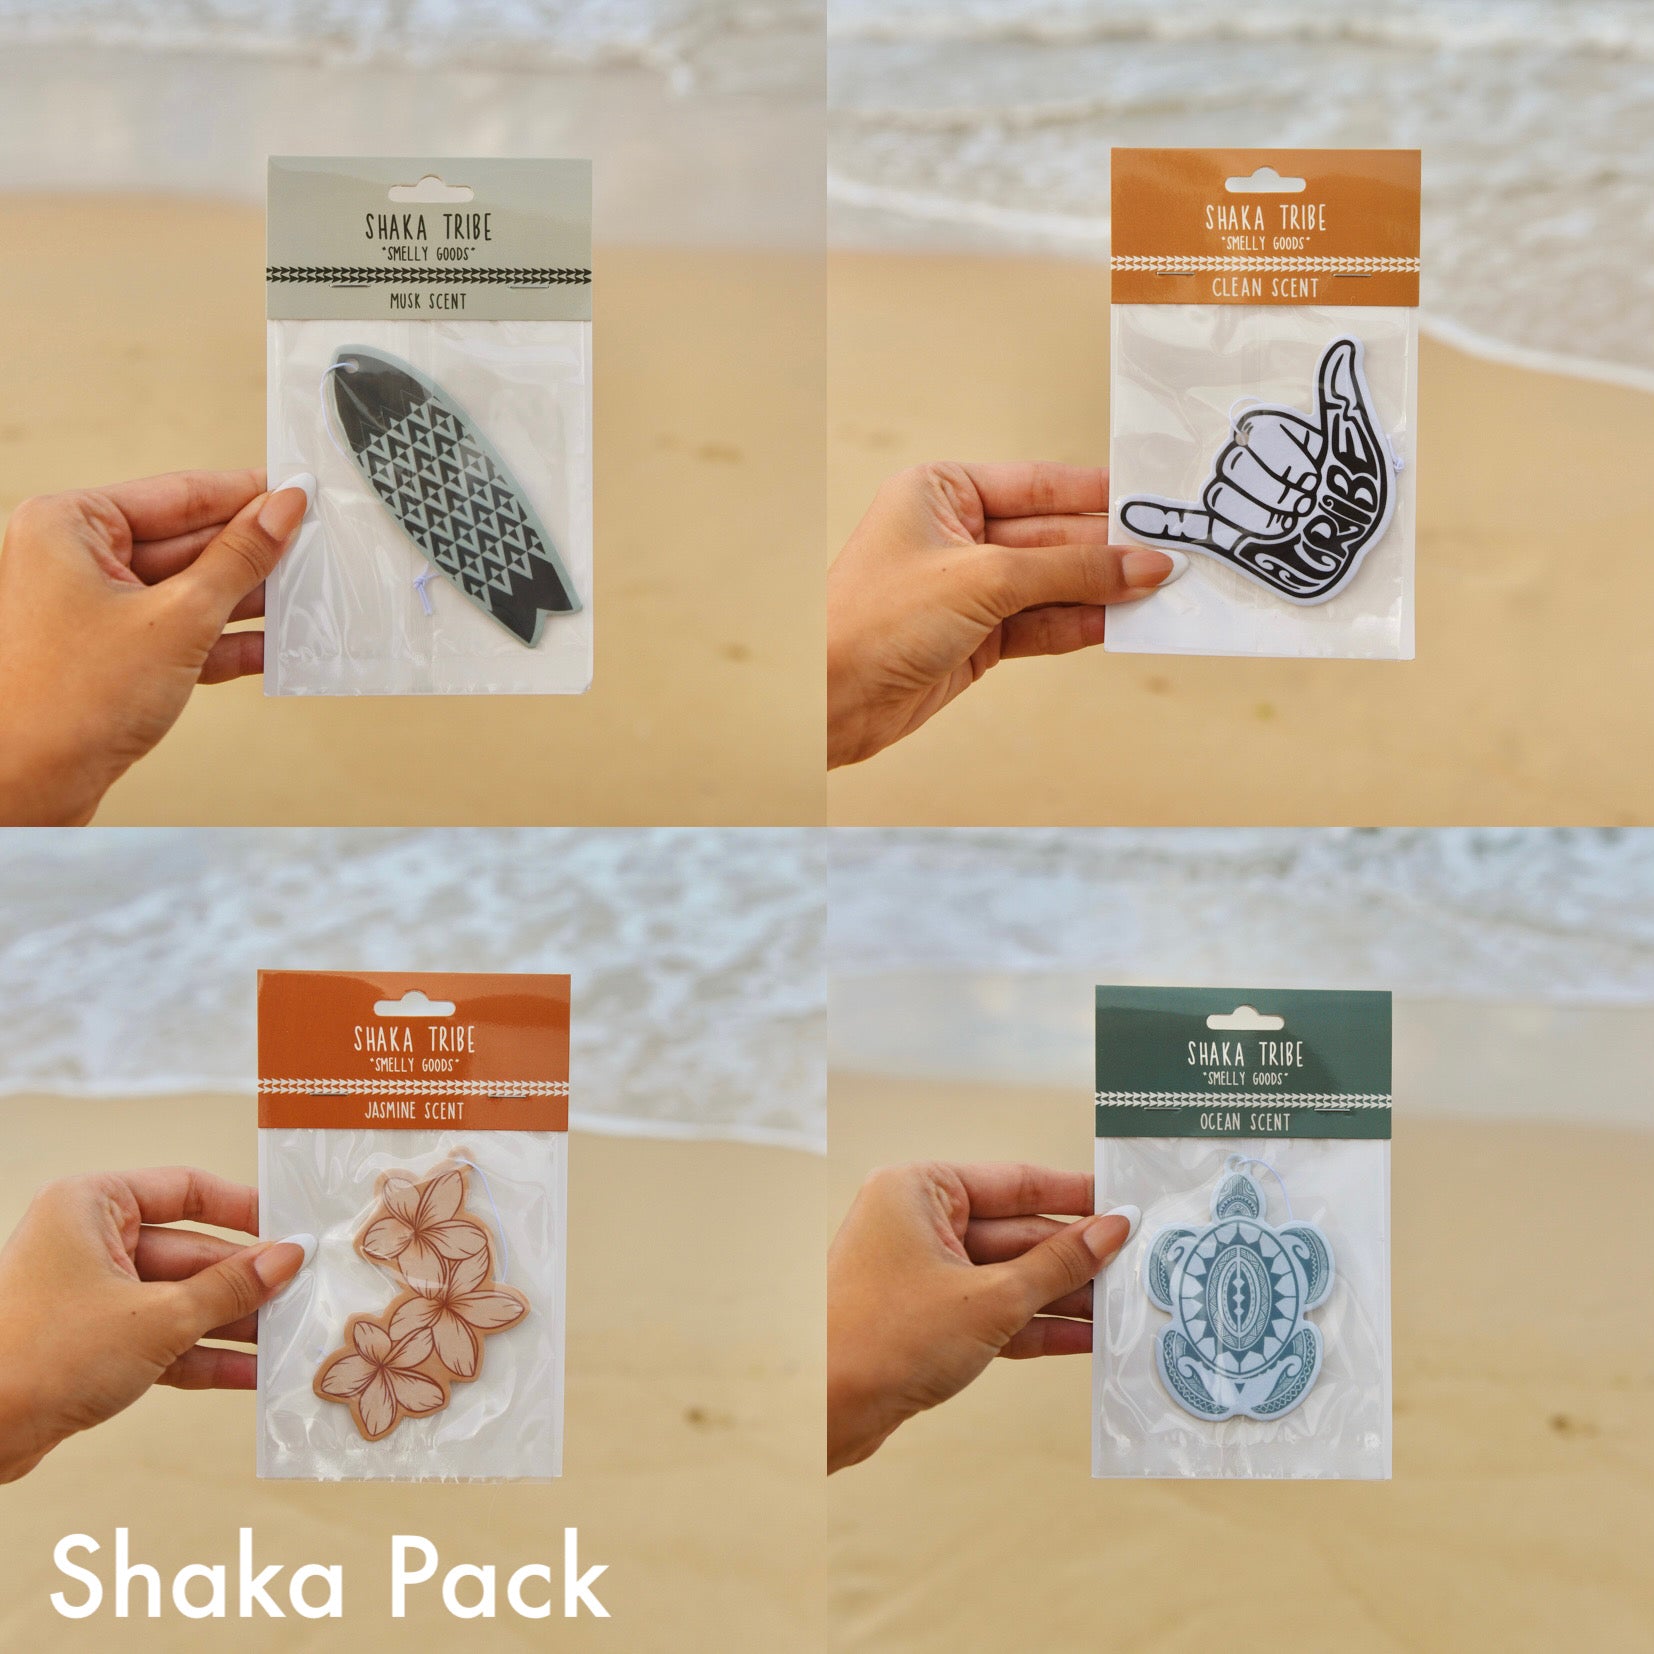 Shaka Pack | "Smelly Goods" | Car Freshener